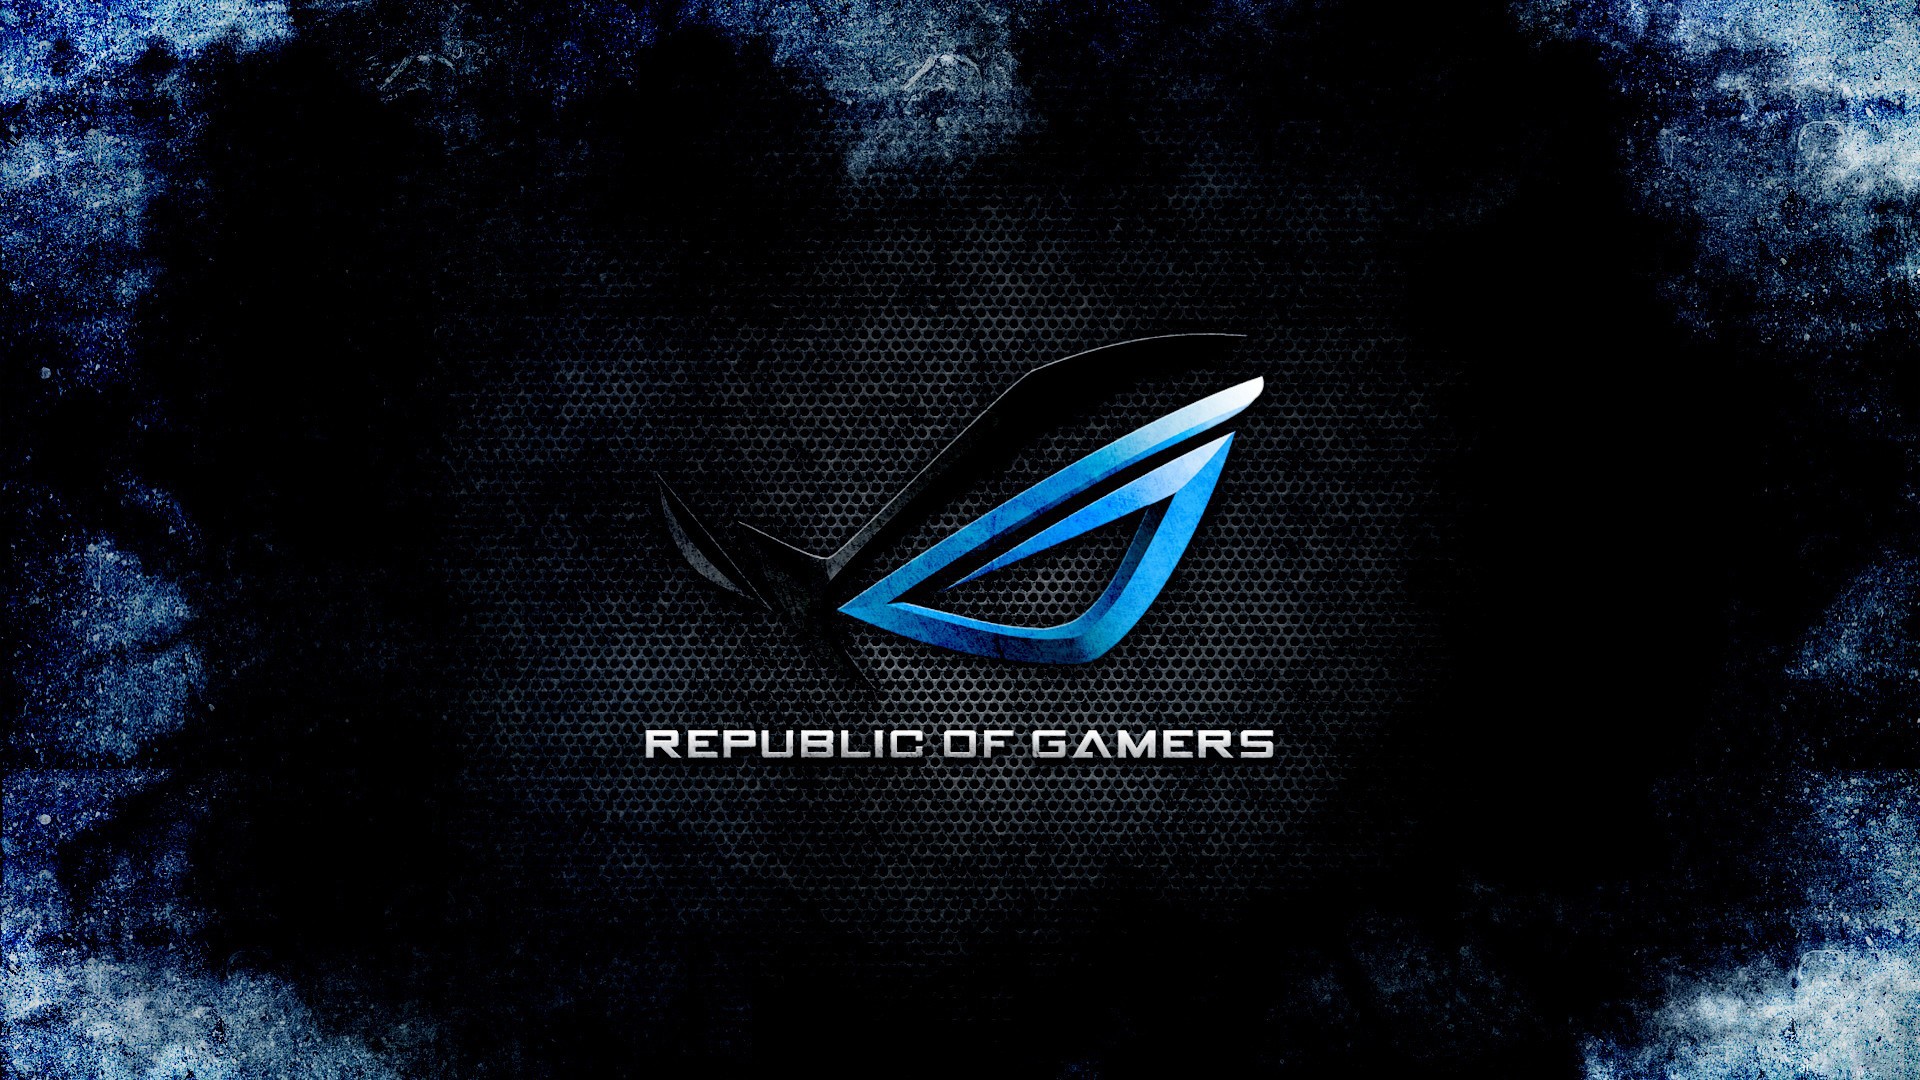 General 1920x1080 Republic of Gamers logo digital art PC gaming